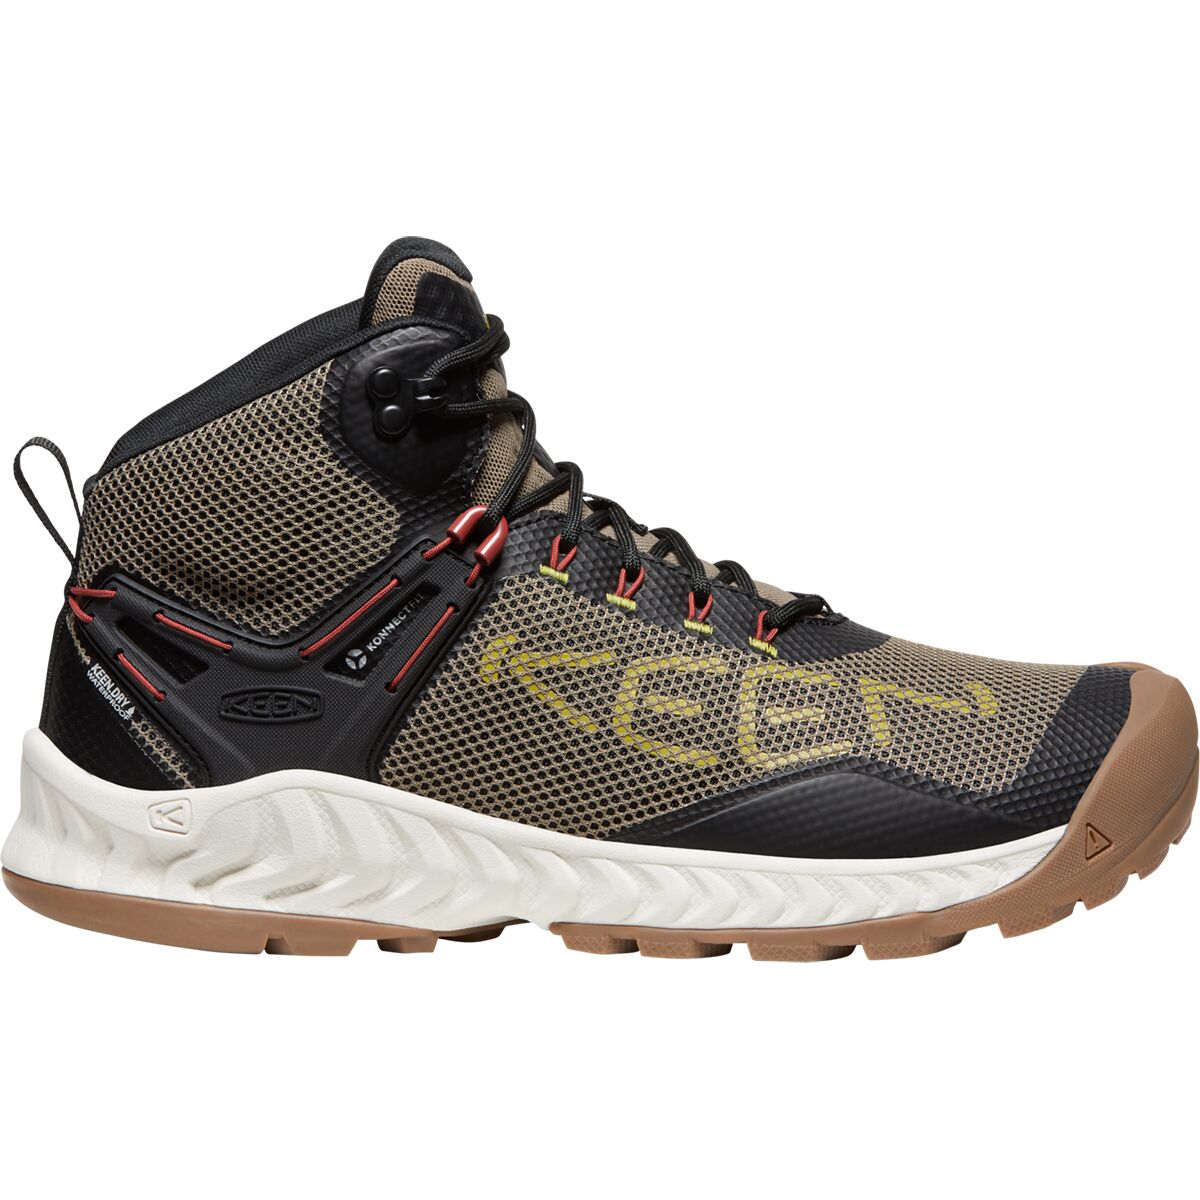 KEEN Nxis Evo Mid Waterproof Hiking Boot - Men's